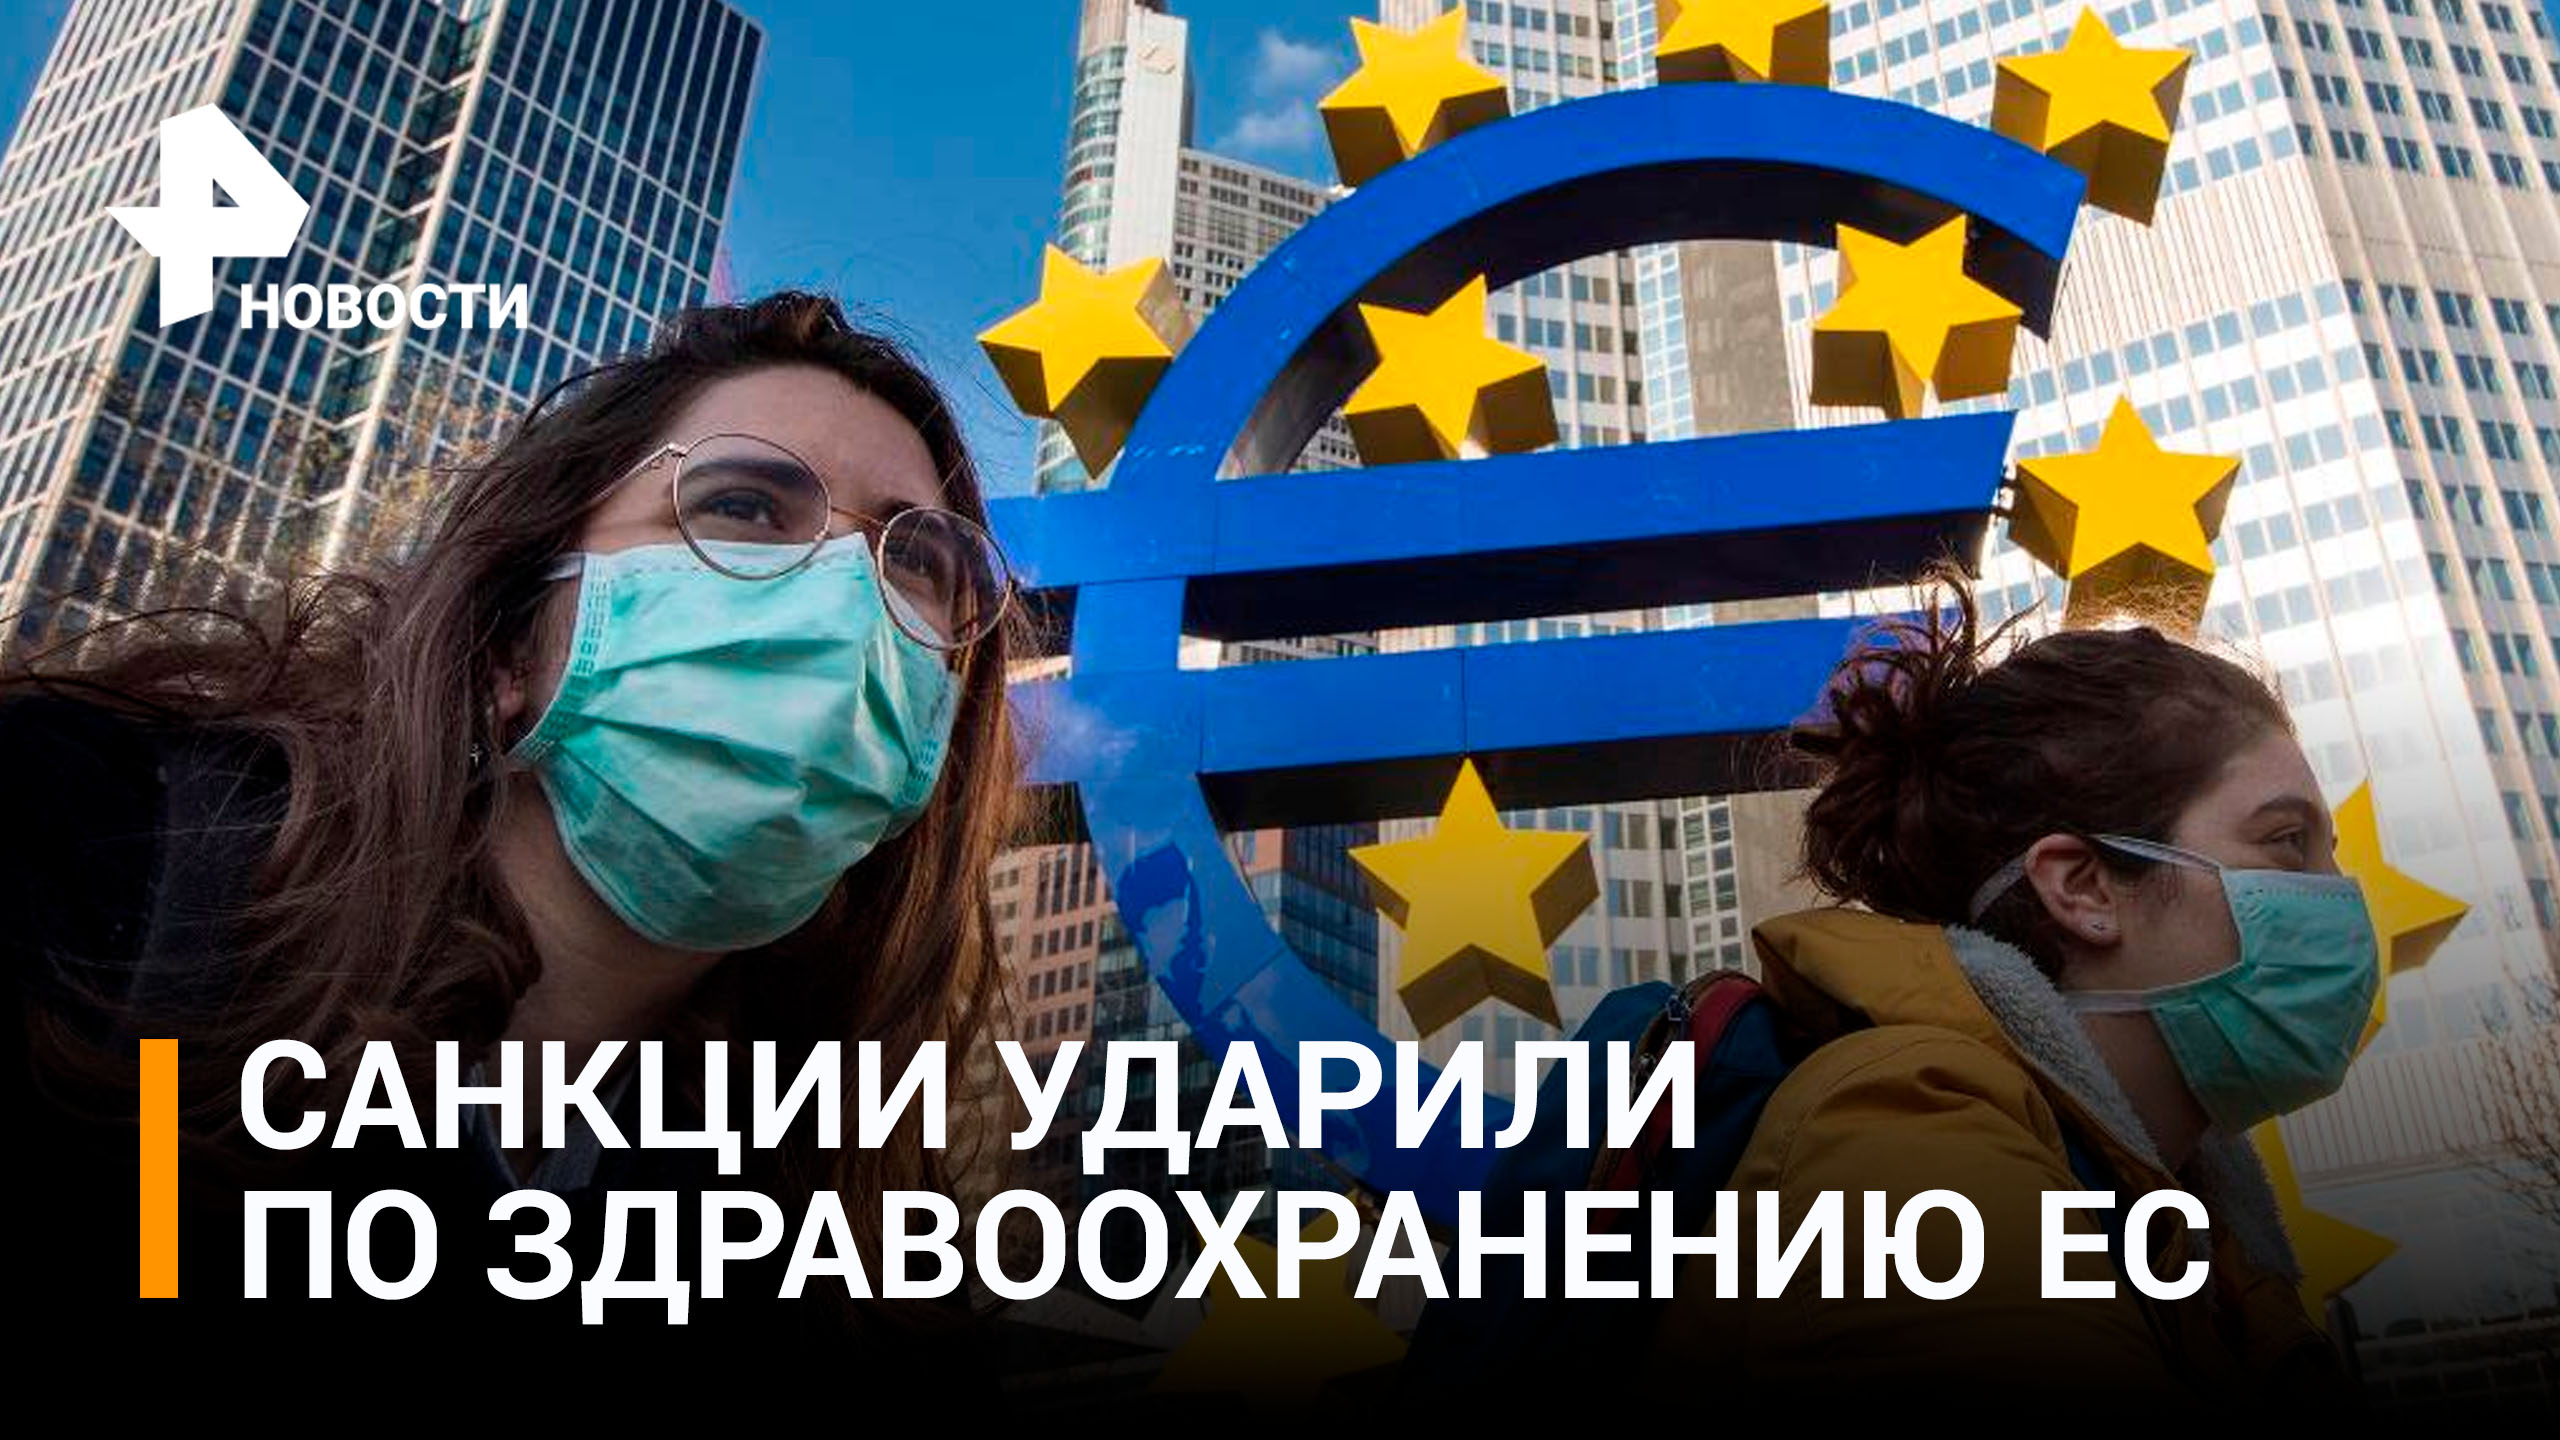 Антироссийские санкции привели к проблемам в сфере здравоохранения ЕС / РЕН Новости